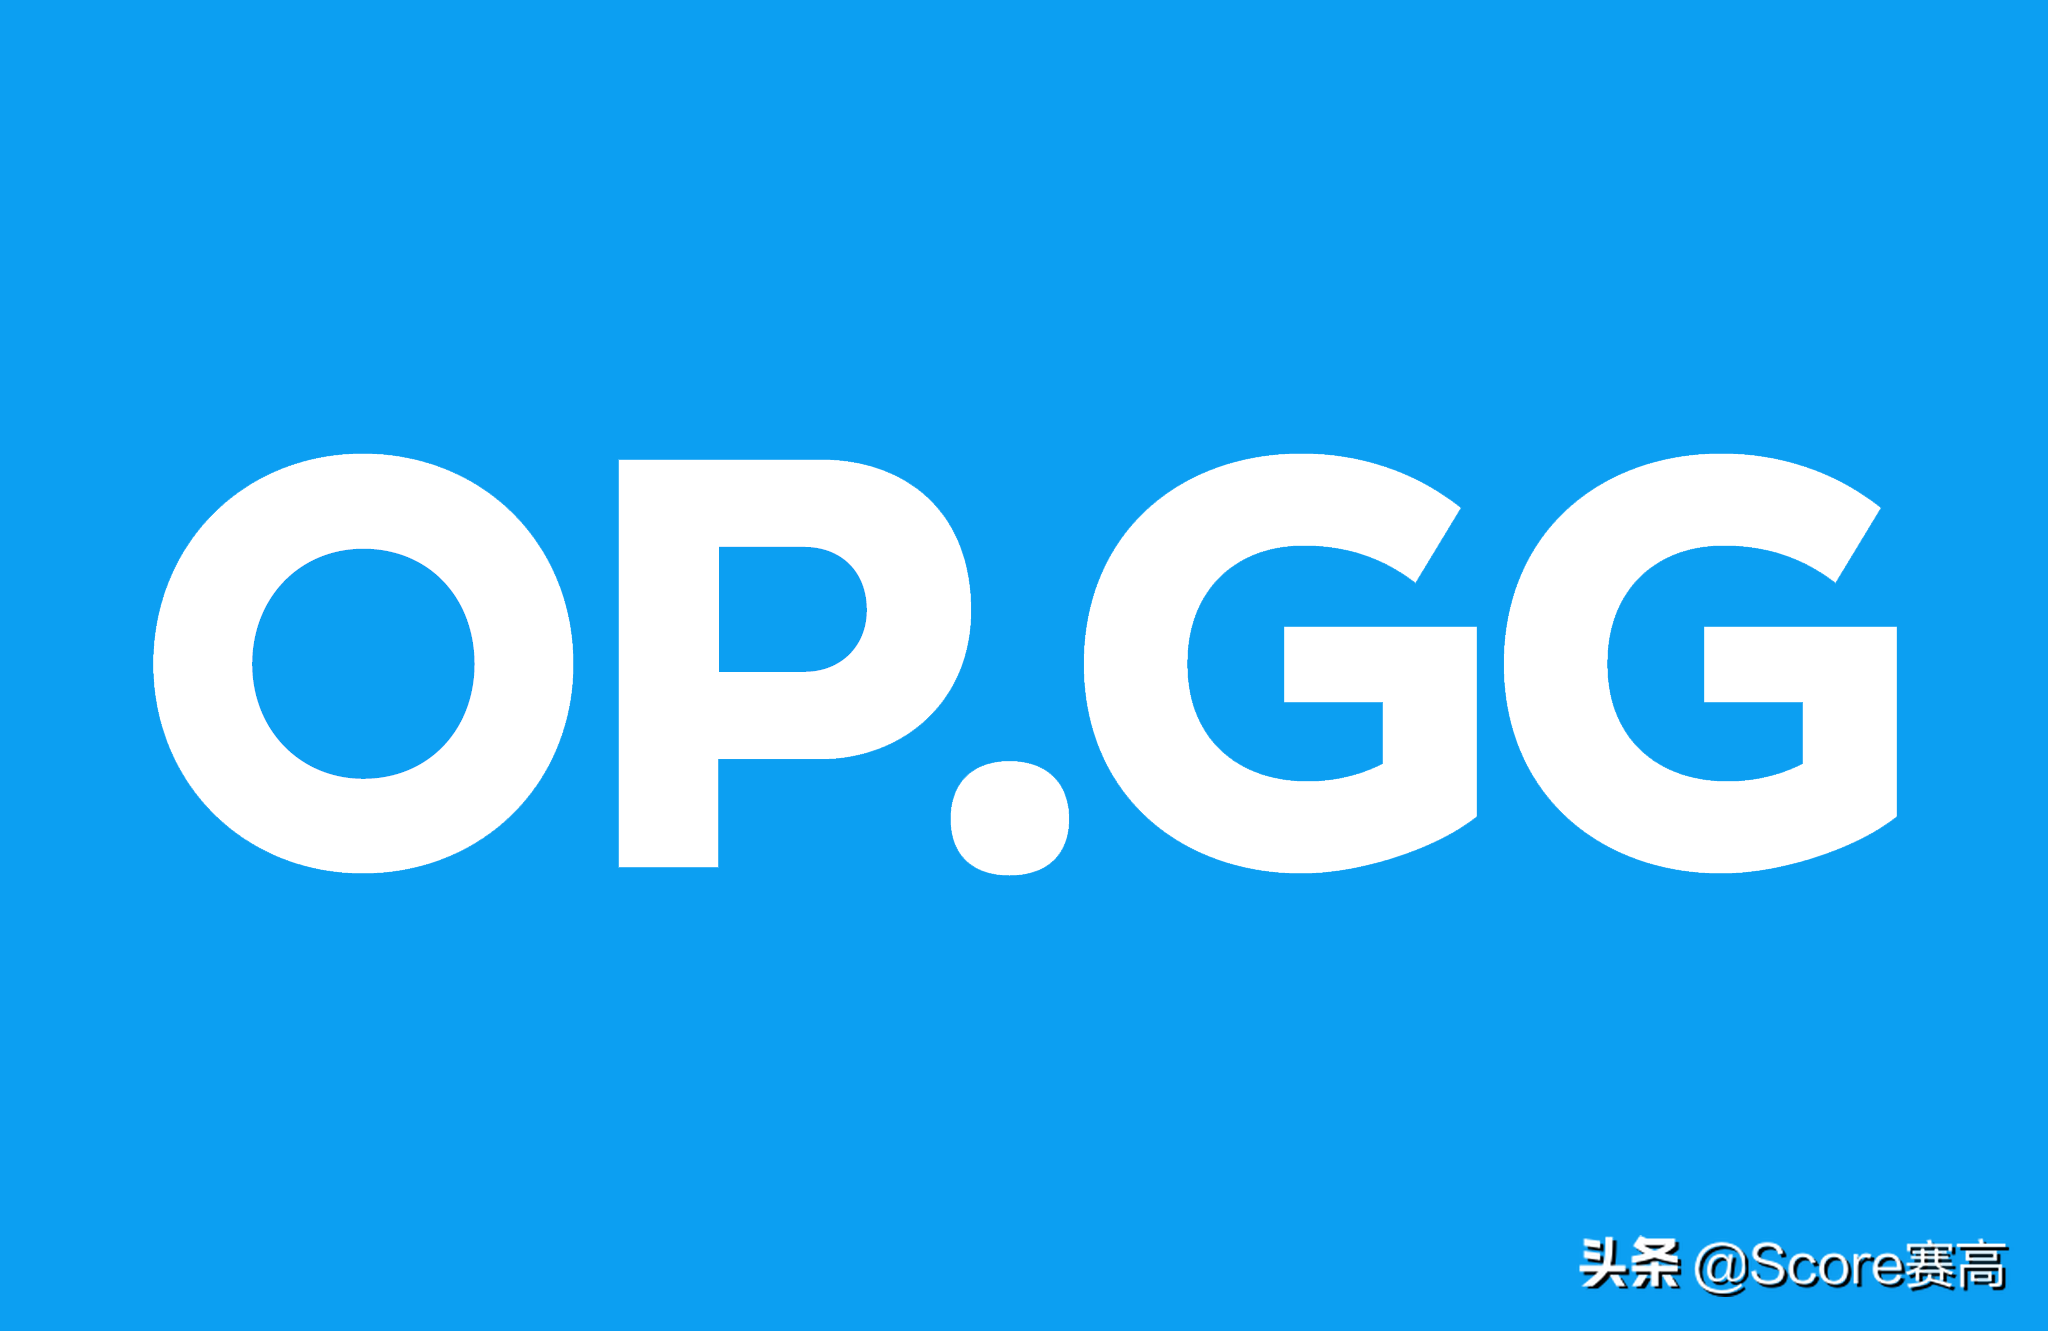 英雄联盟opgg网站最新新闻(韩国数据网站组建战队的最新消息)--第1张